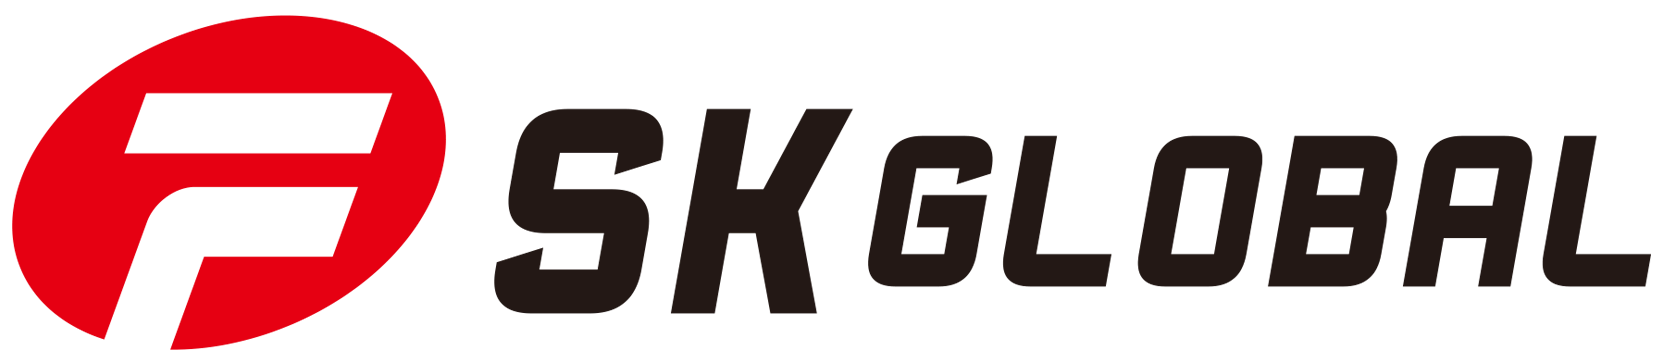 順光國際有限公司 SK Global Co., Ltd.